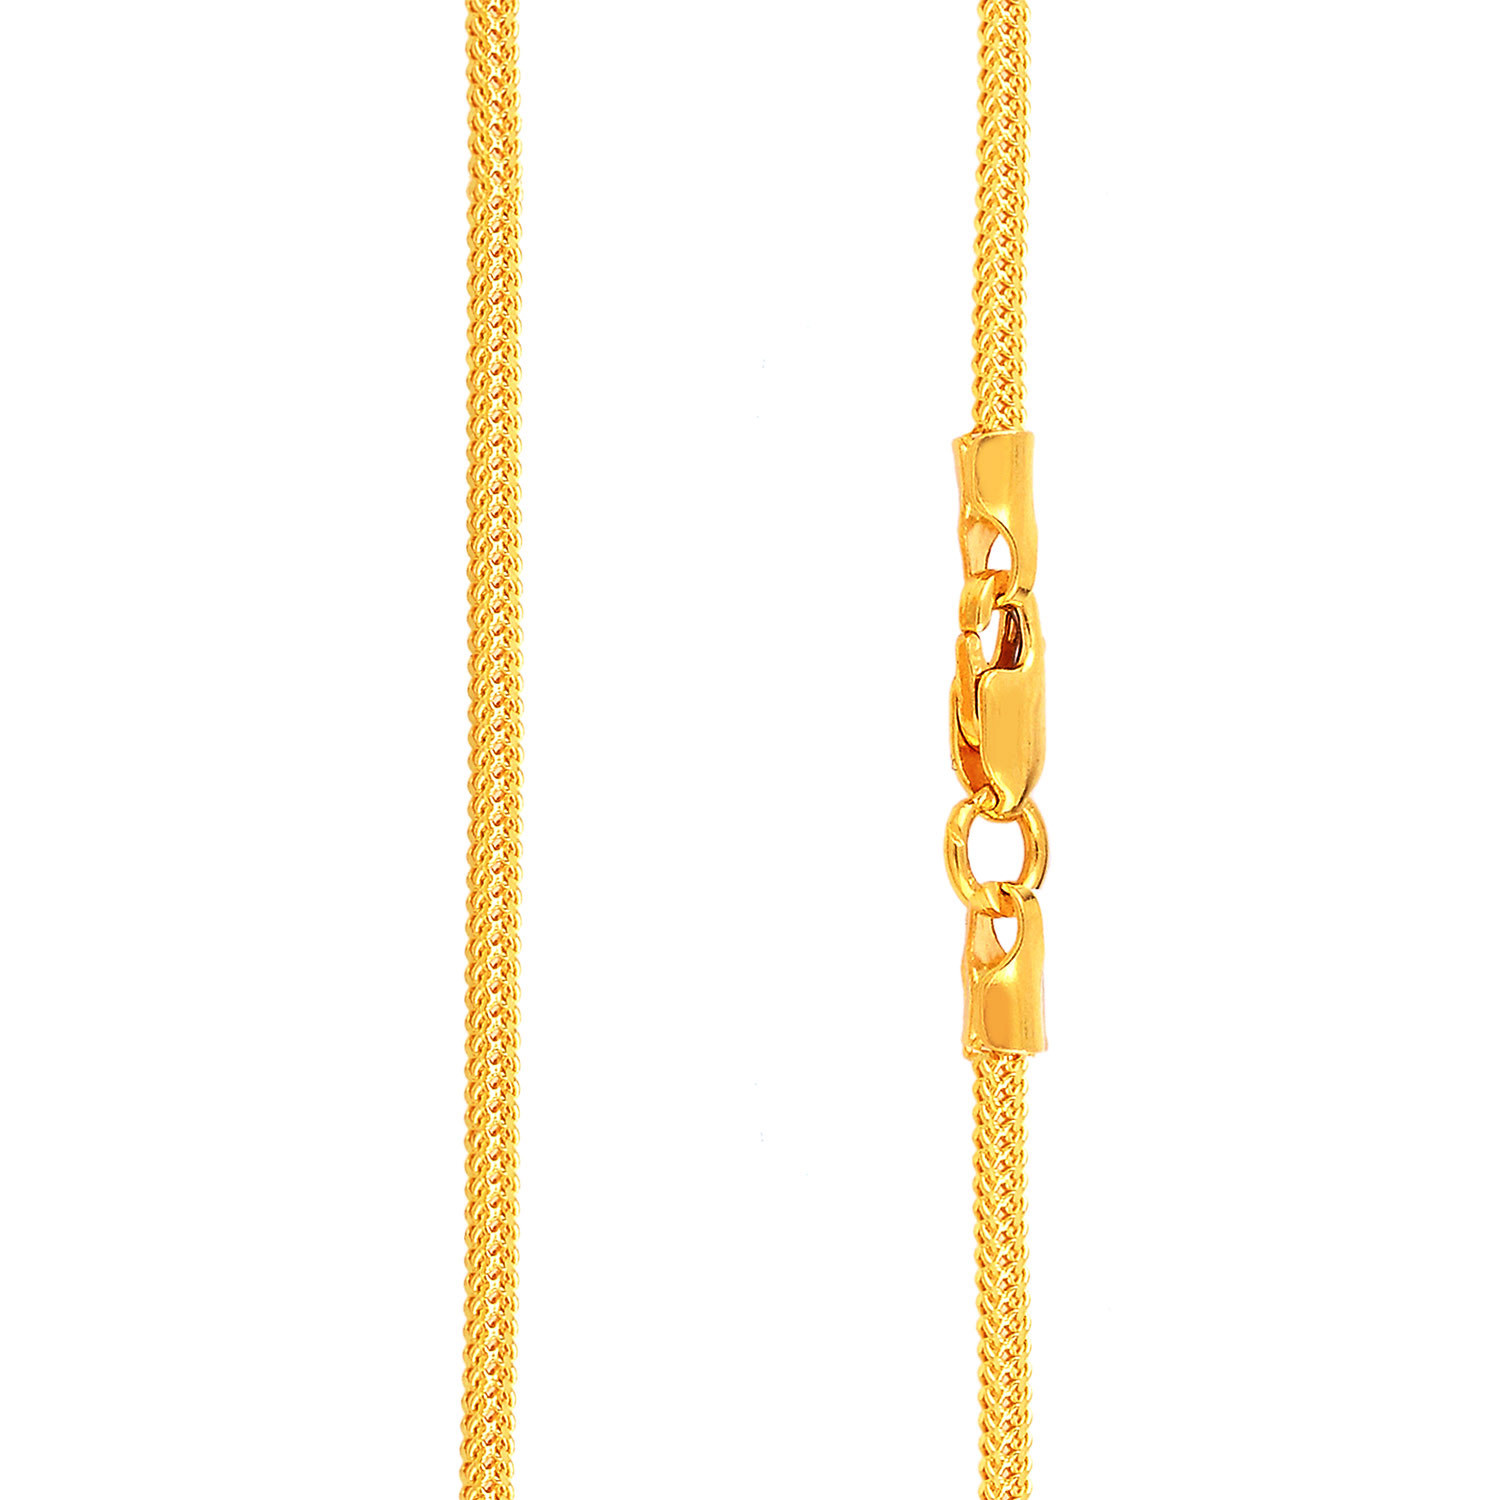 Malabar Gold Chain AICHBMX30P01